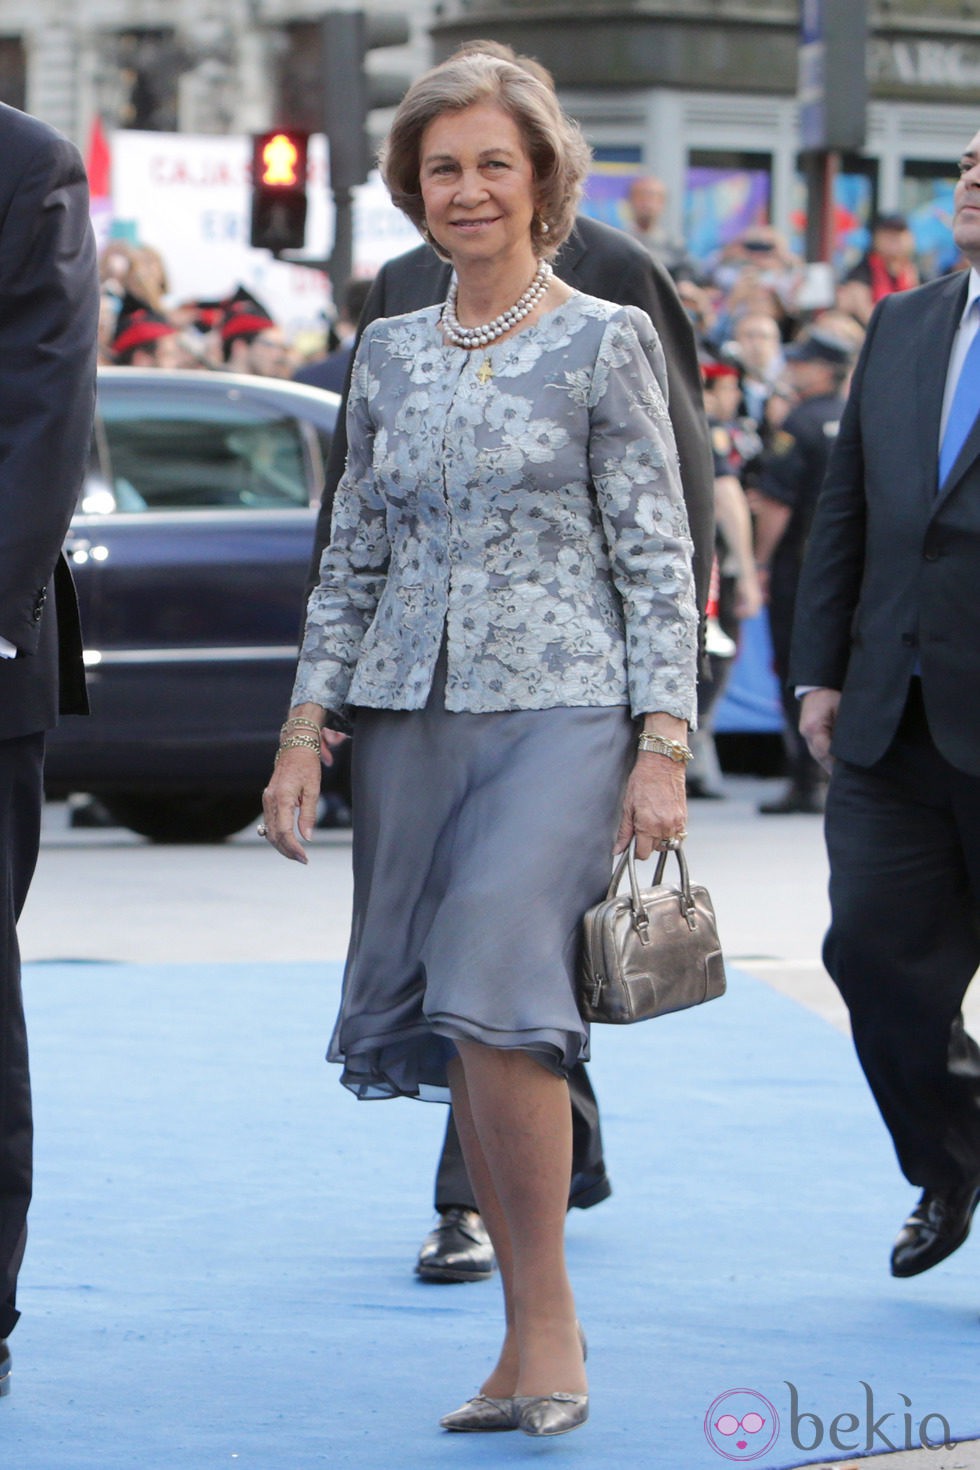 La Reina Sofía a su llegada a la entrega de los Premios Príncipe de Asturias 2014